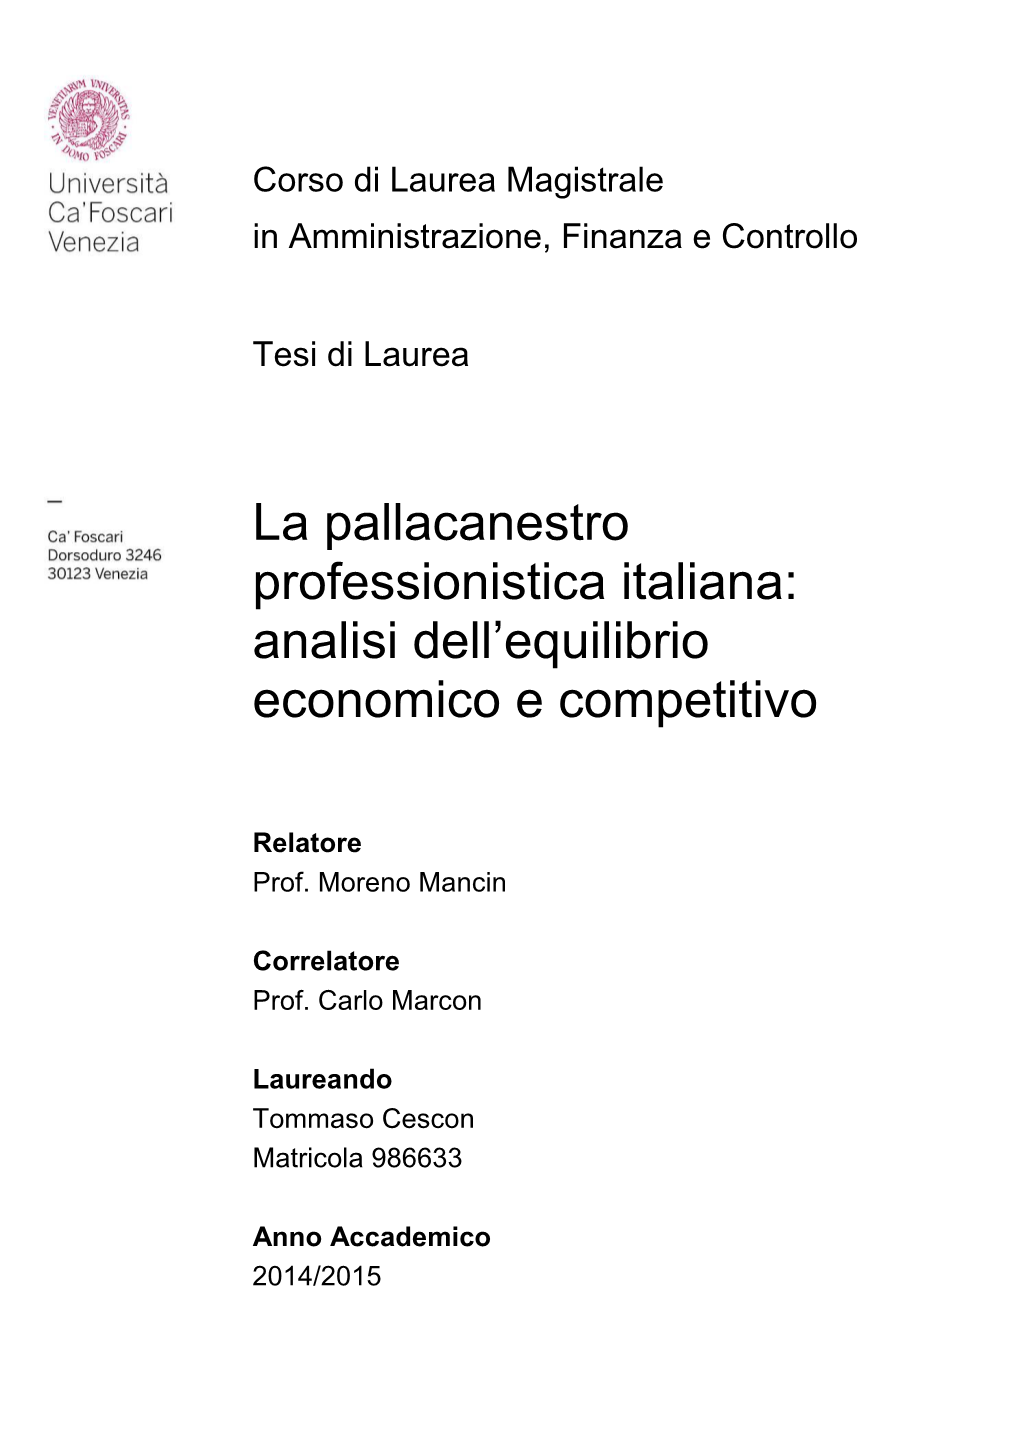 La Pallacanestro Professionistica Italiana: Analisi Dell'equilibrio